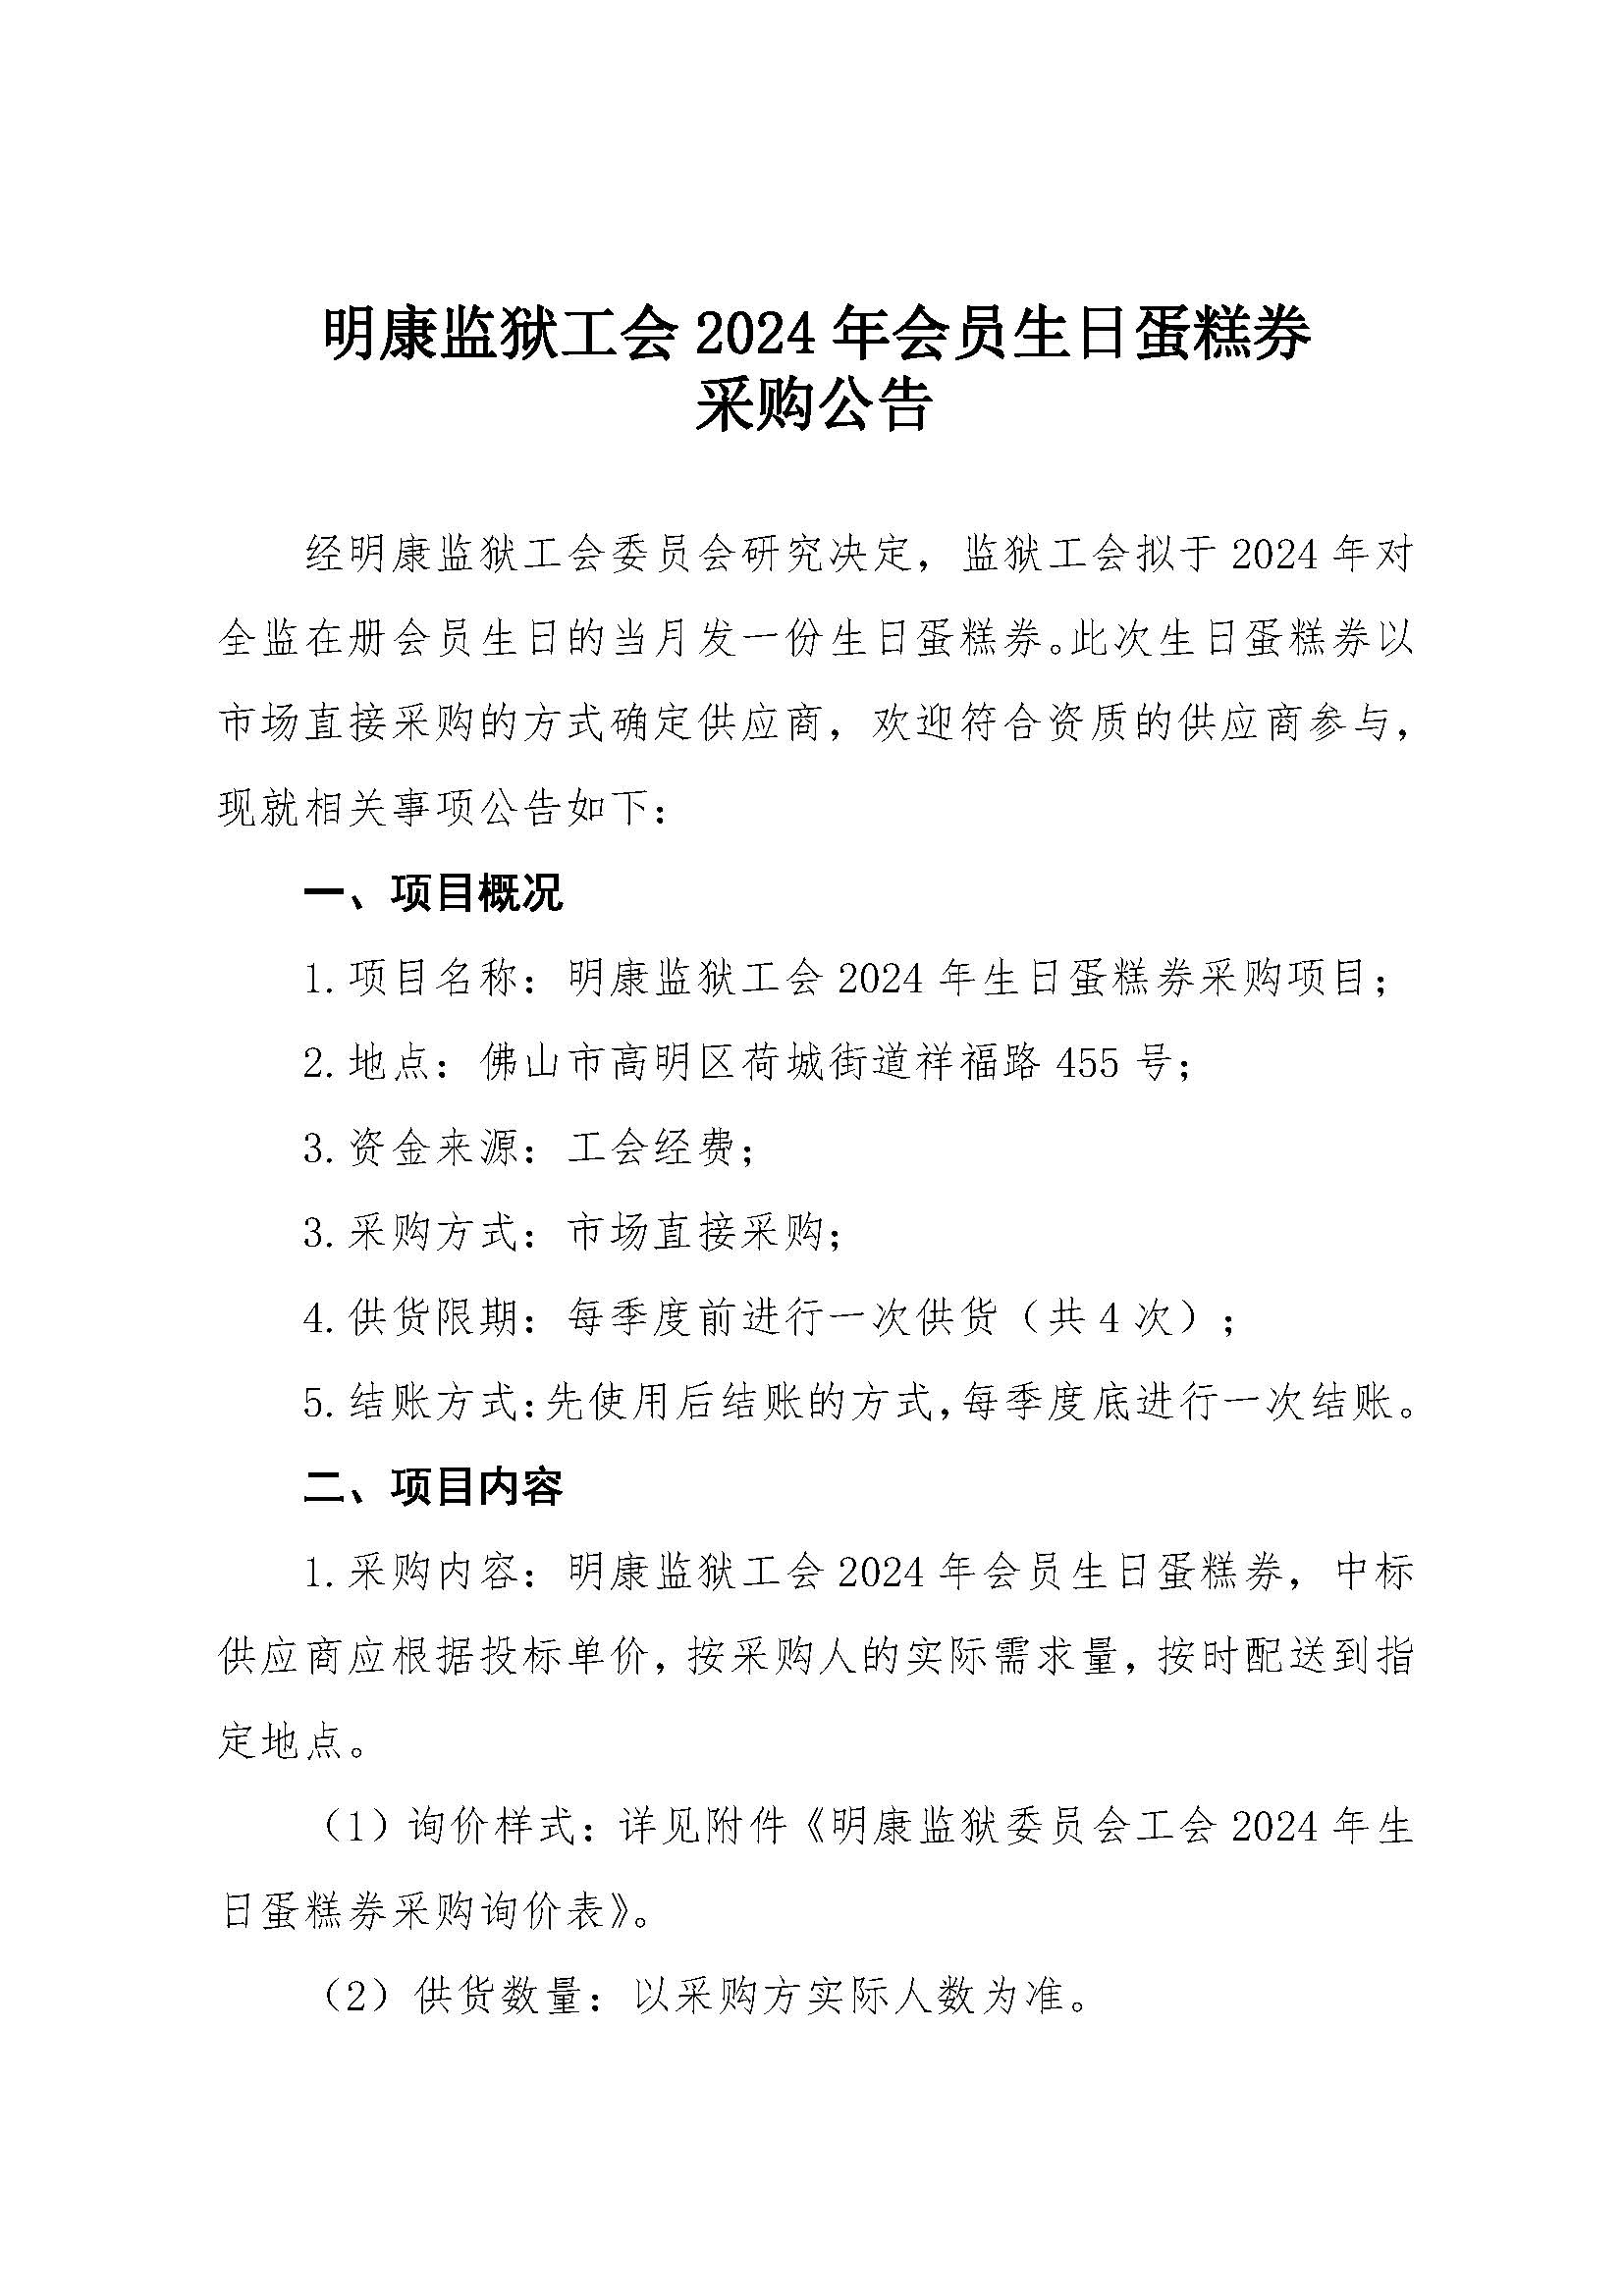 明康监狱工会2024年会员生日蛋糕券采购公告_页面_1.jpg